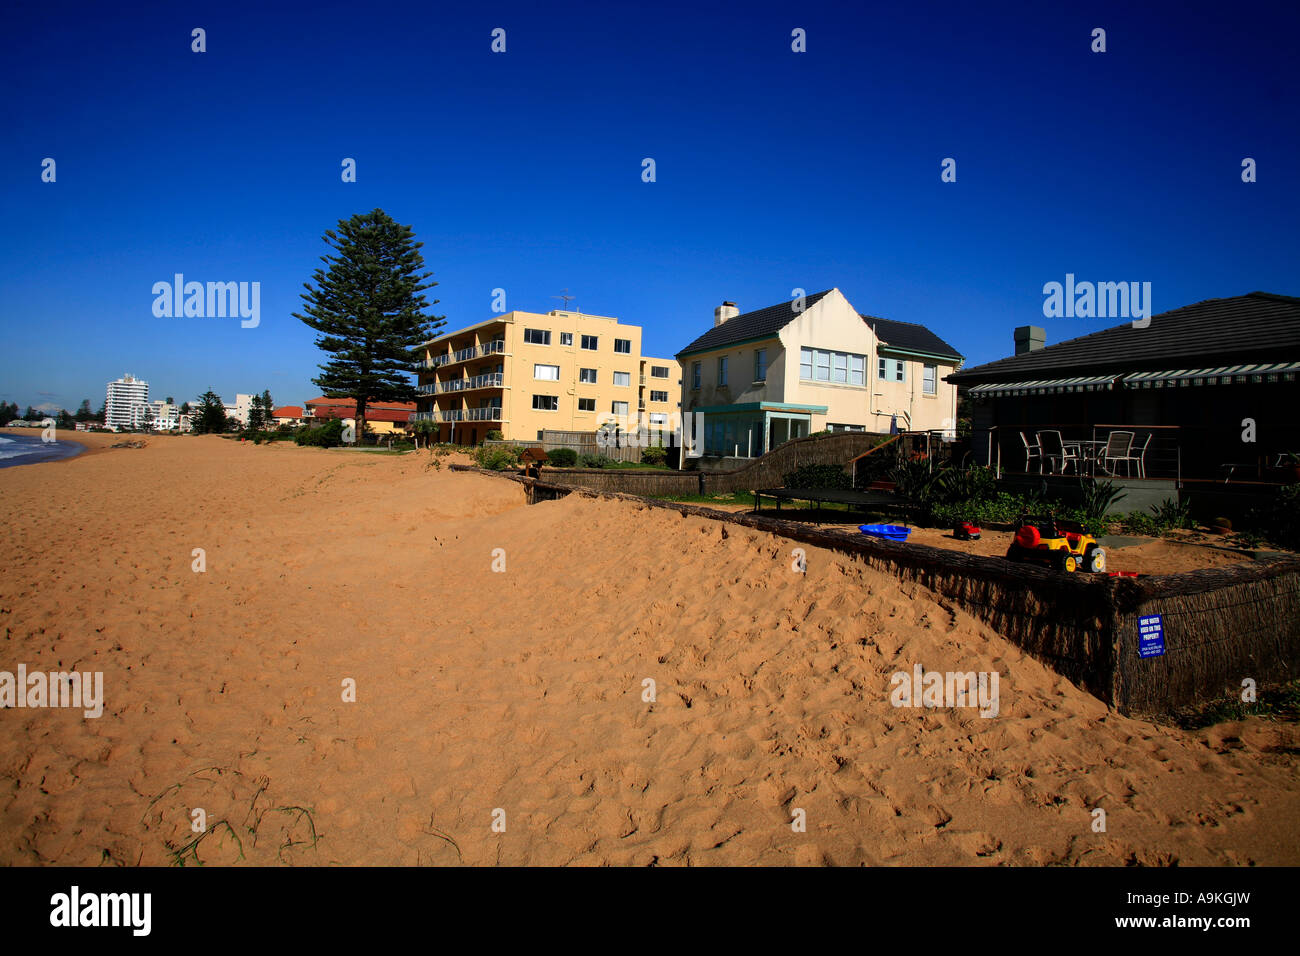 Modifica dei livelli di sabbia rendono manifesta gli effetti del riscaldamento globale e del cambiamento climatico sulle zone costiere in Australia Foto Stock